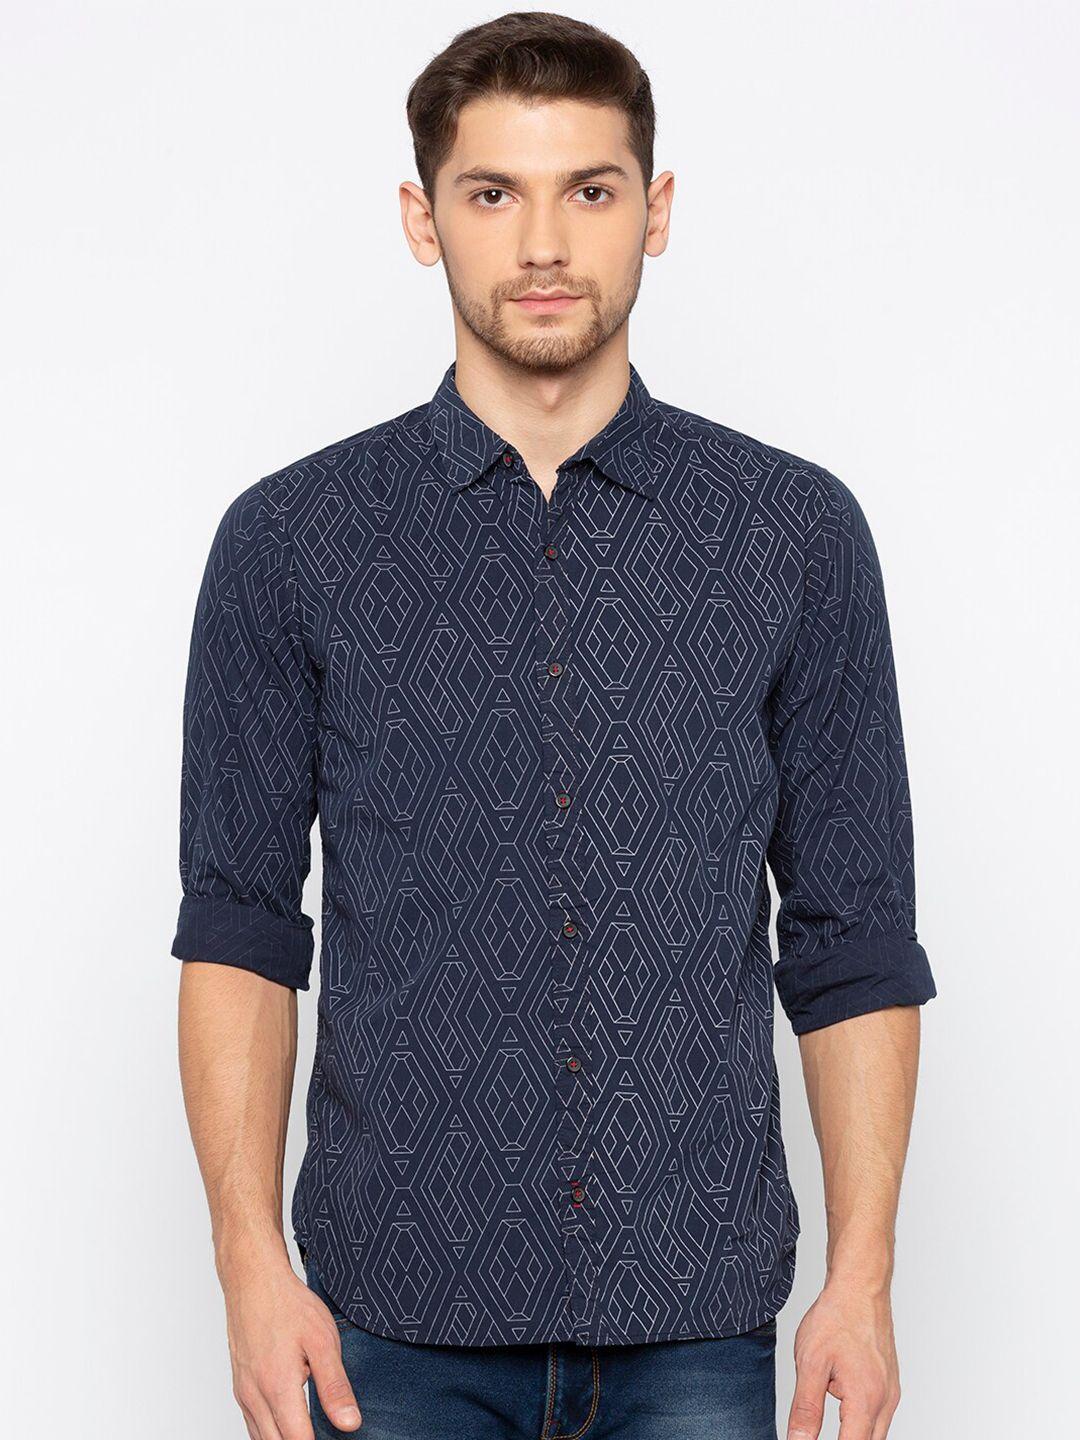 status quo men navy blue slim fit printed casual shirt